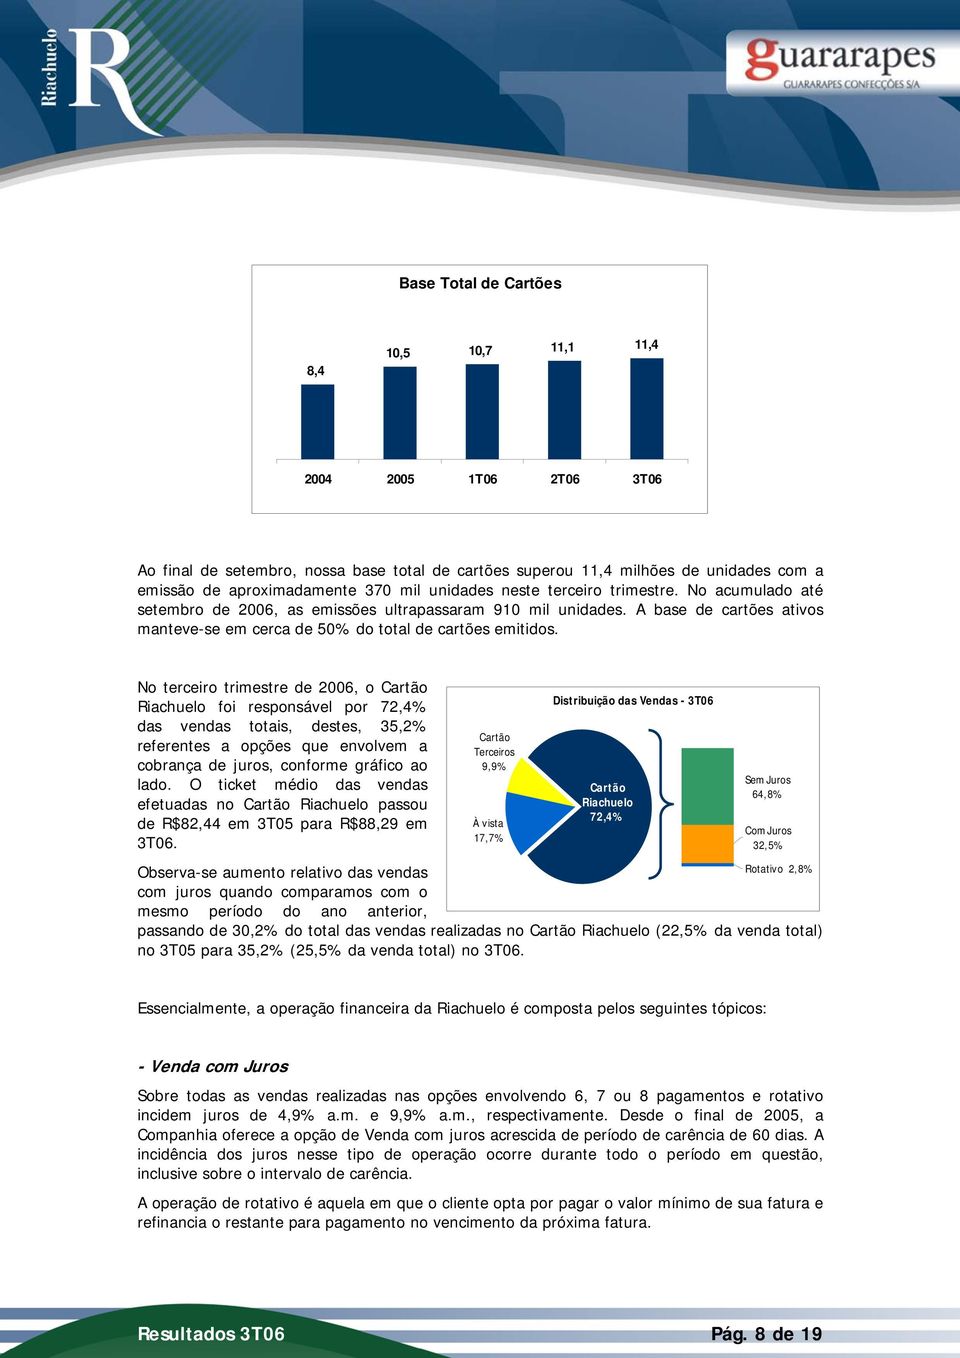 No terceiro trimestre de 2006, o Cartão Riachuelo foi responsável por 72,4% das vendas totais, destes, 35,2% referentes a opções que envolvem a cobrança de juros, conforme gráfico ao lado.